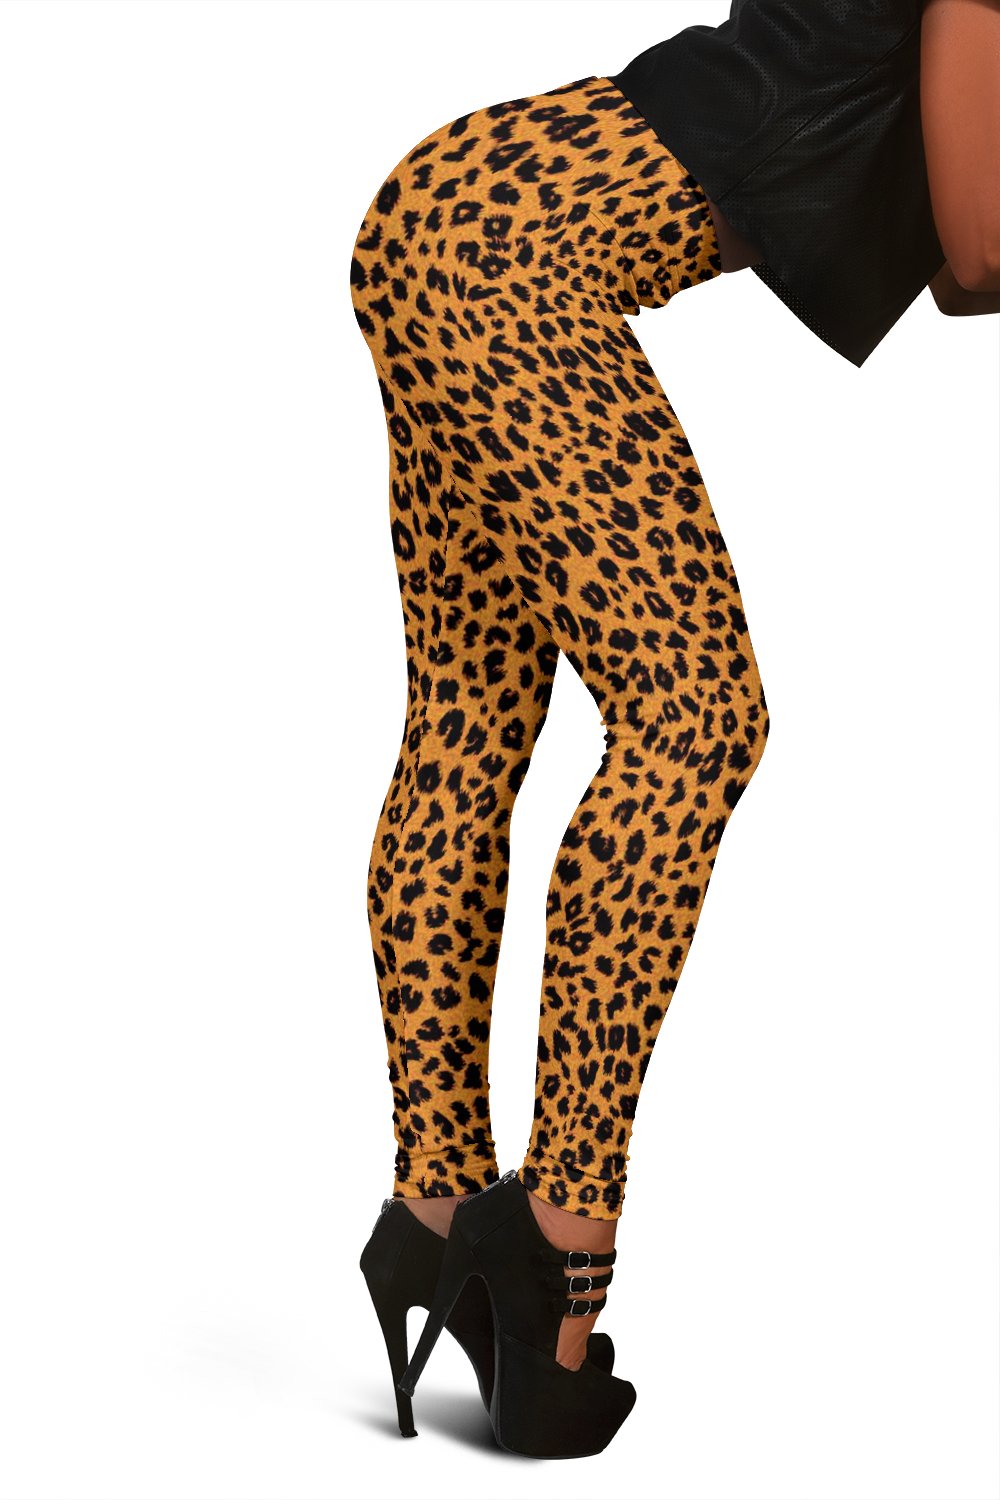 Cheetah Skin Print Women Leggings